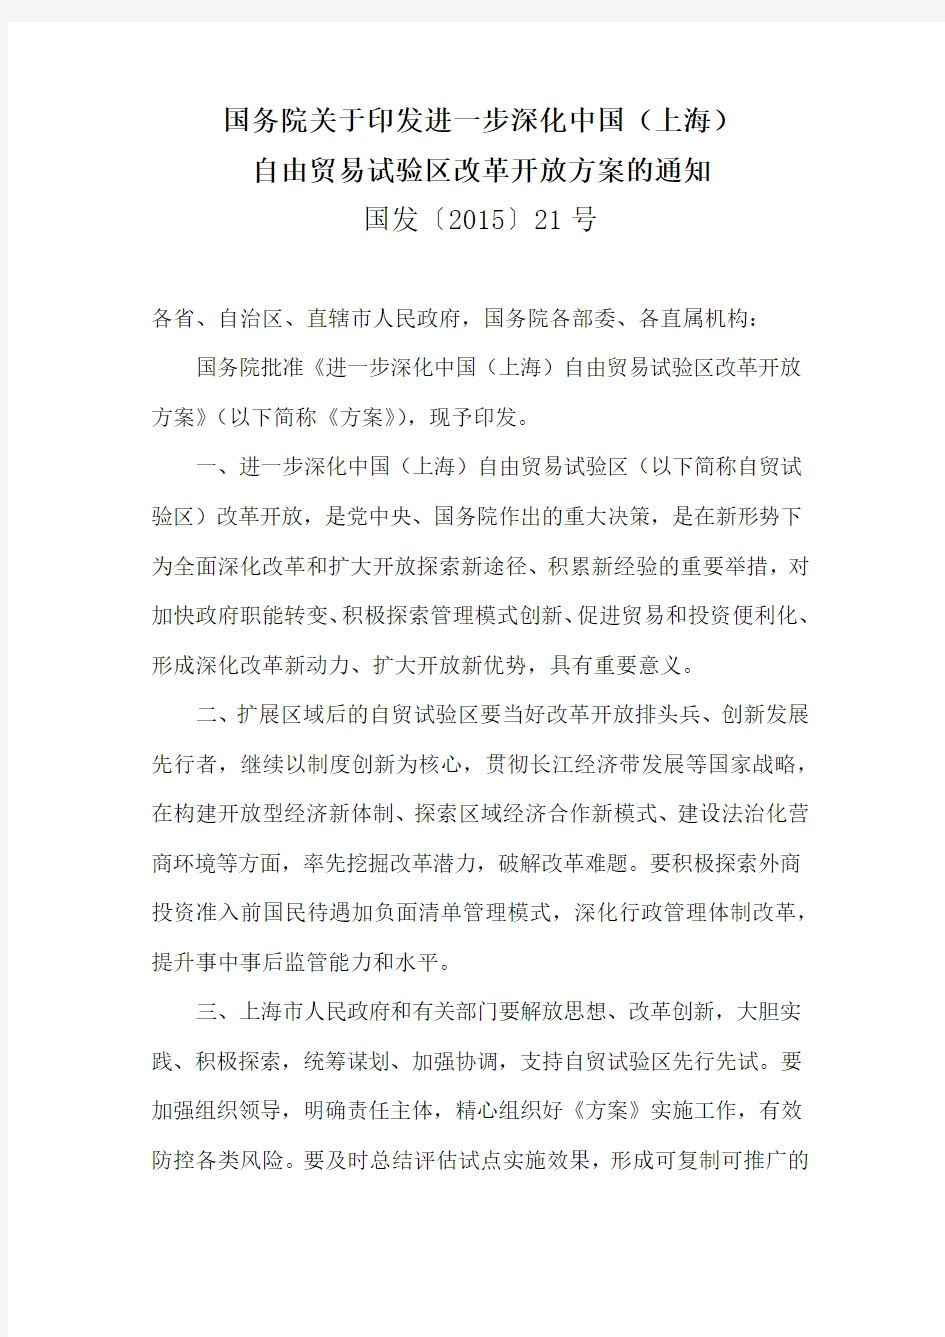 《进一步深化中国(上海)自由贸易试验区改革开放方案》(国发〔2015〕21号)